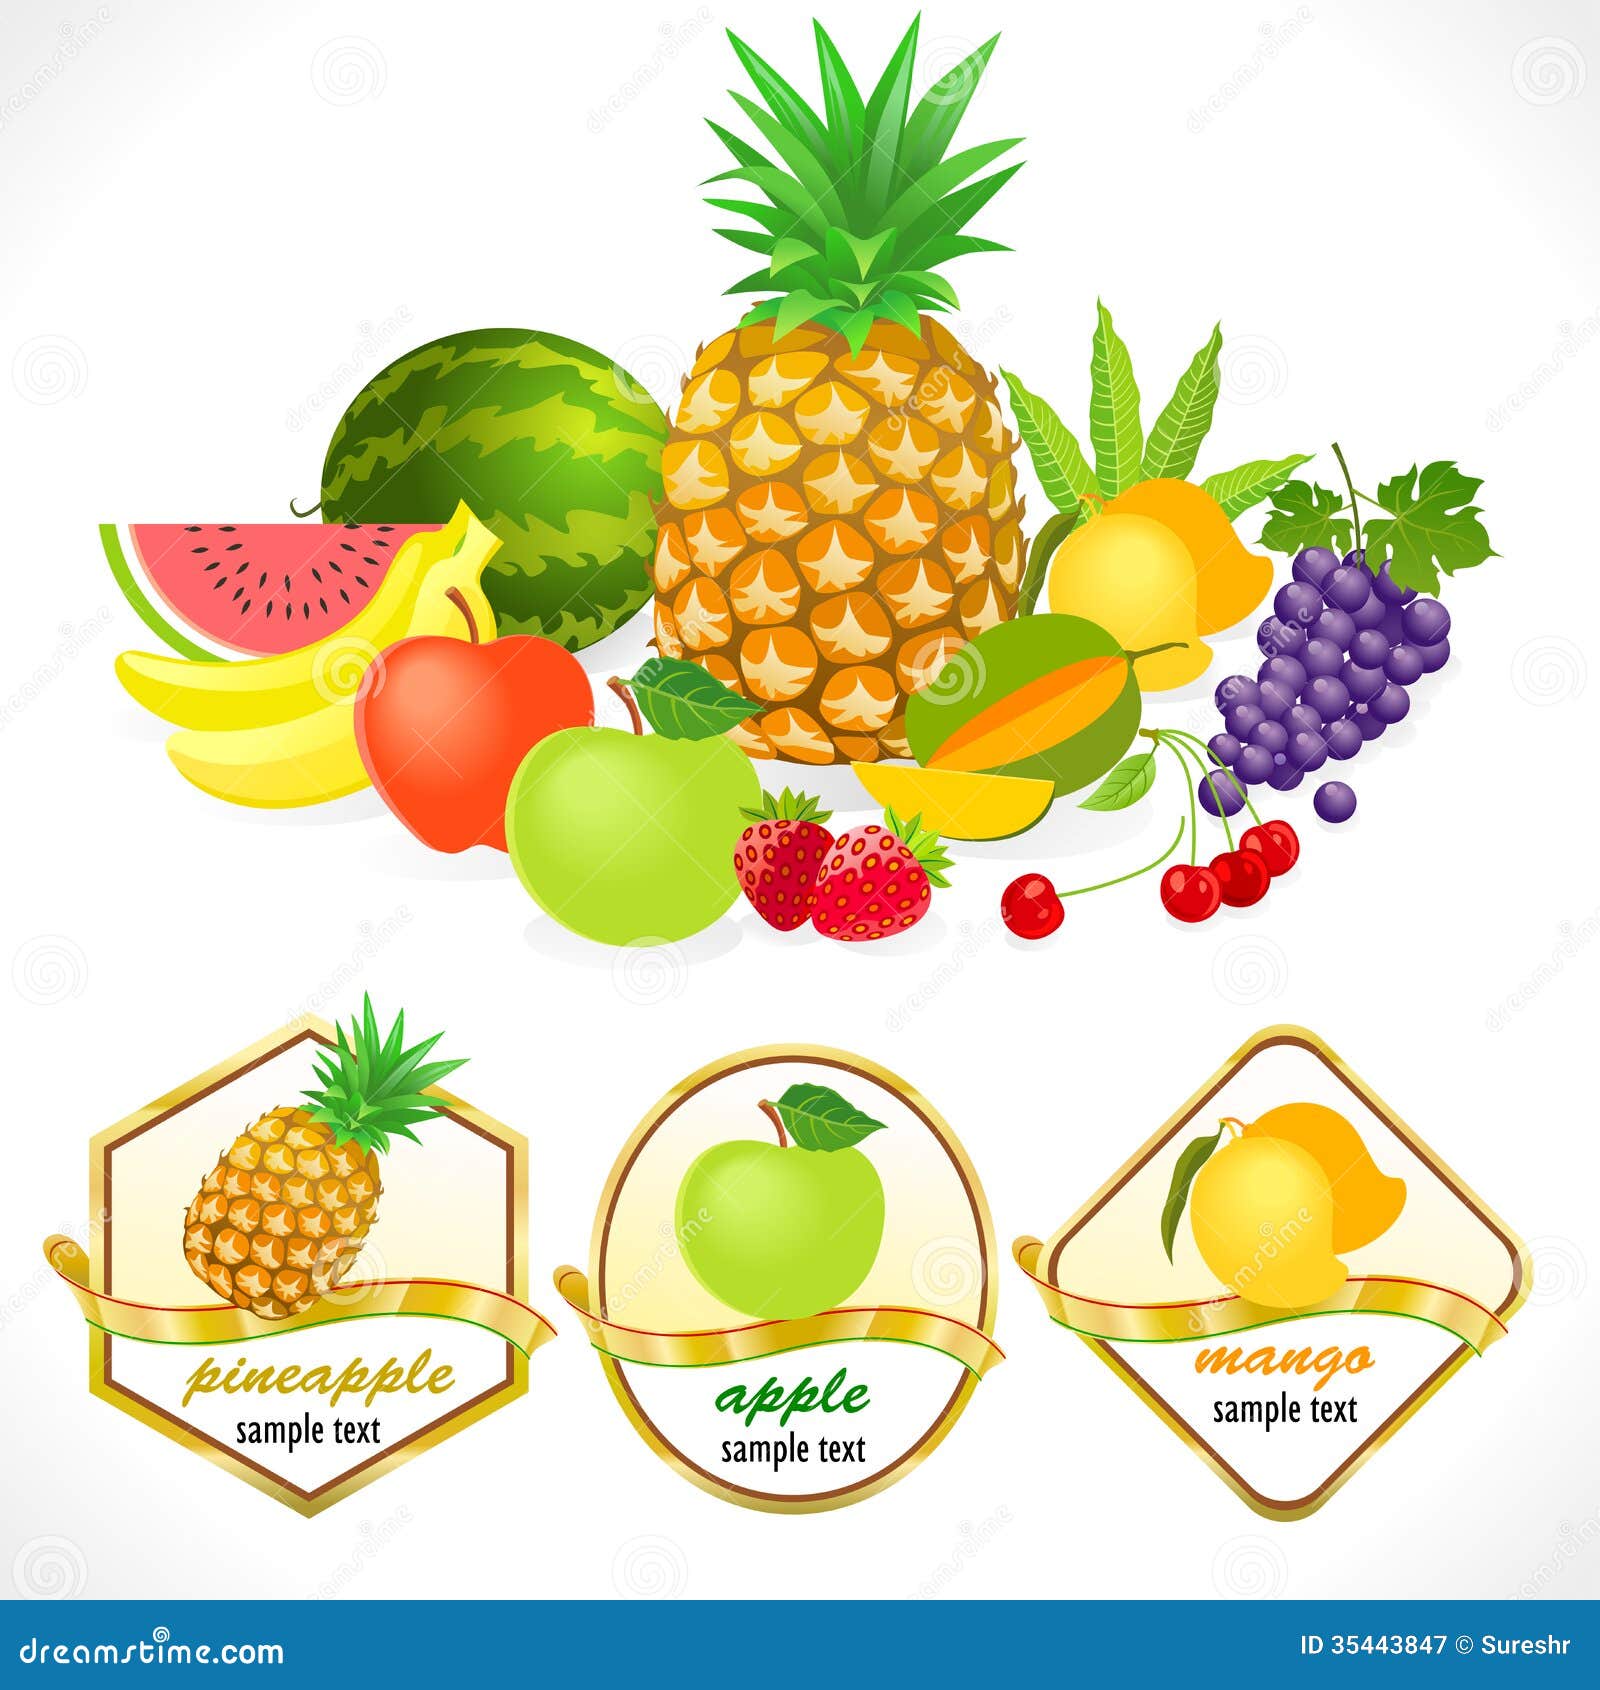 Global fresh fruits & vegetables